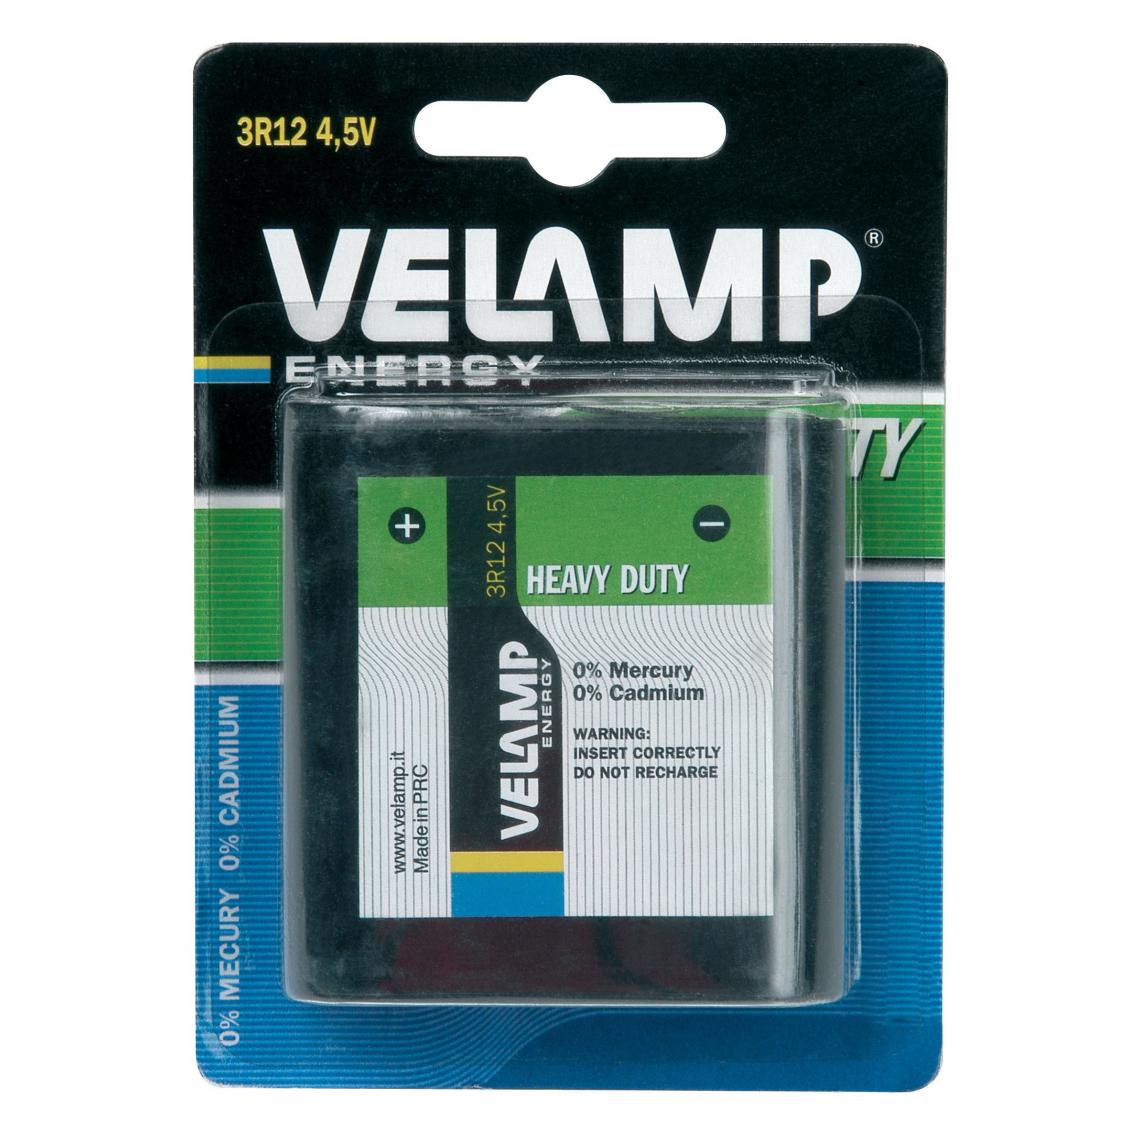 Velamp - Pile plate 3R12 4,5V saline - Piles standard